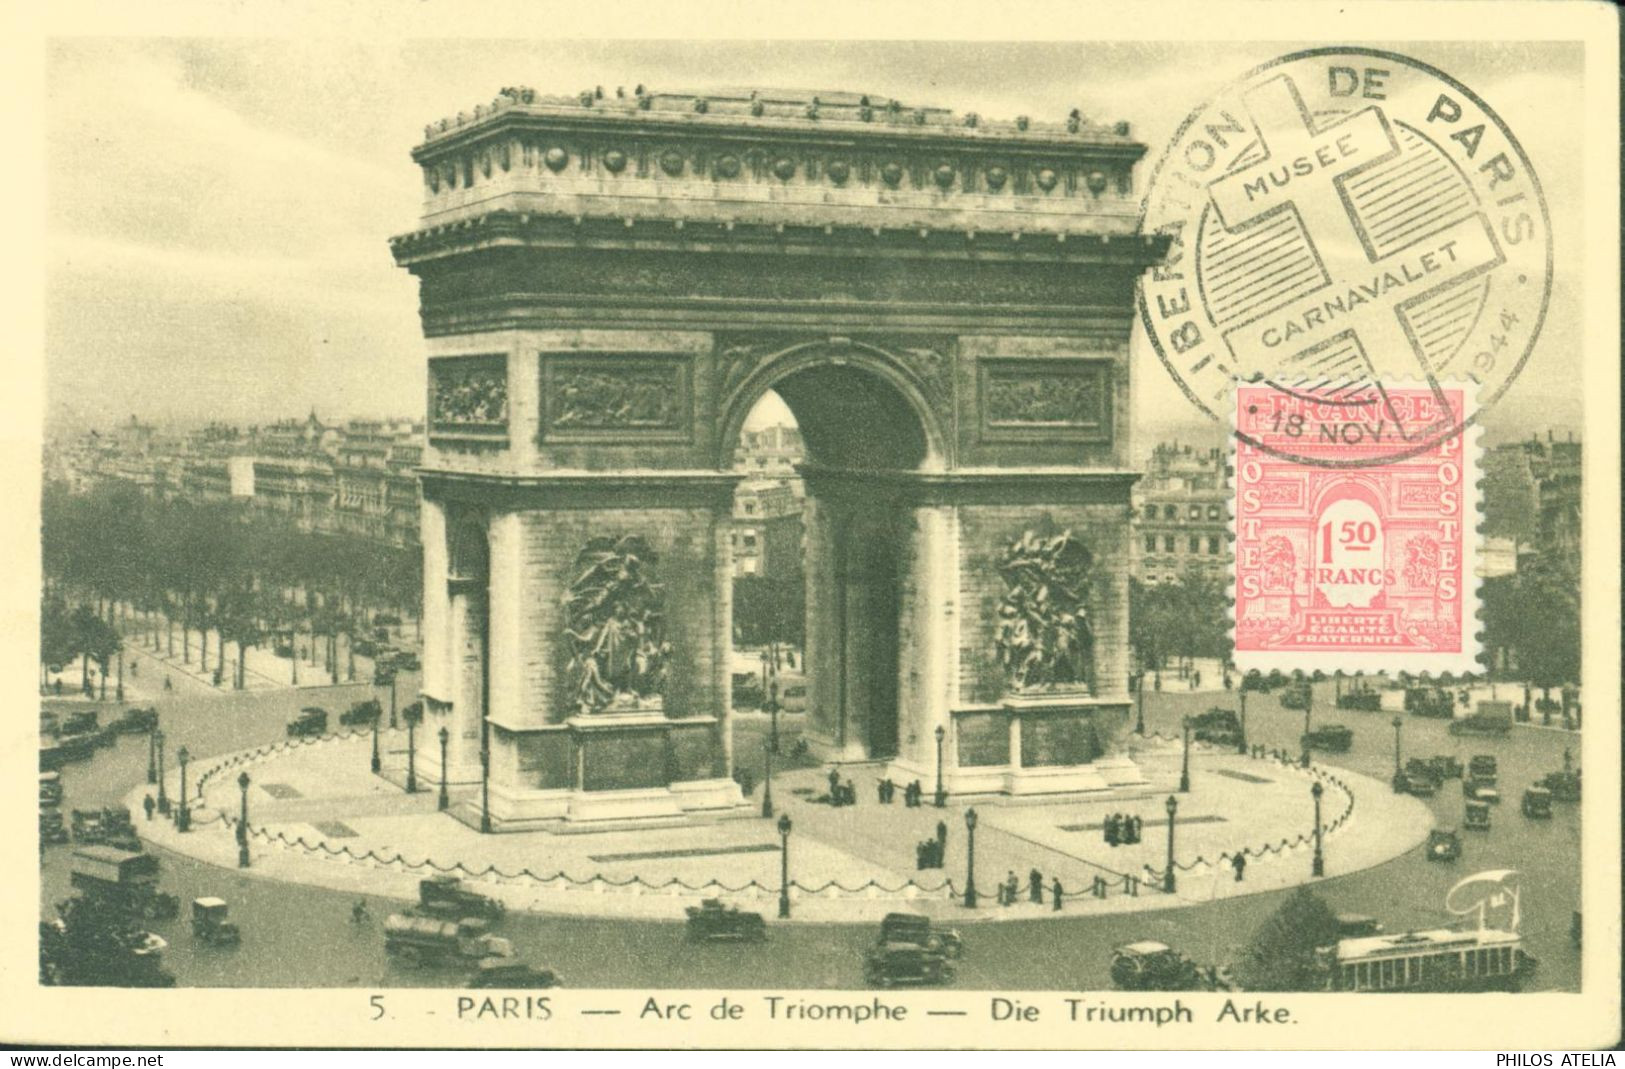 Guerre 40 CM Carte Maximum Arc De Triomphe YT N°625 CAD Illustré Libération De Paris Musée Carnavalet 18 NOV 44 - Guerra De 1939-45